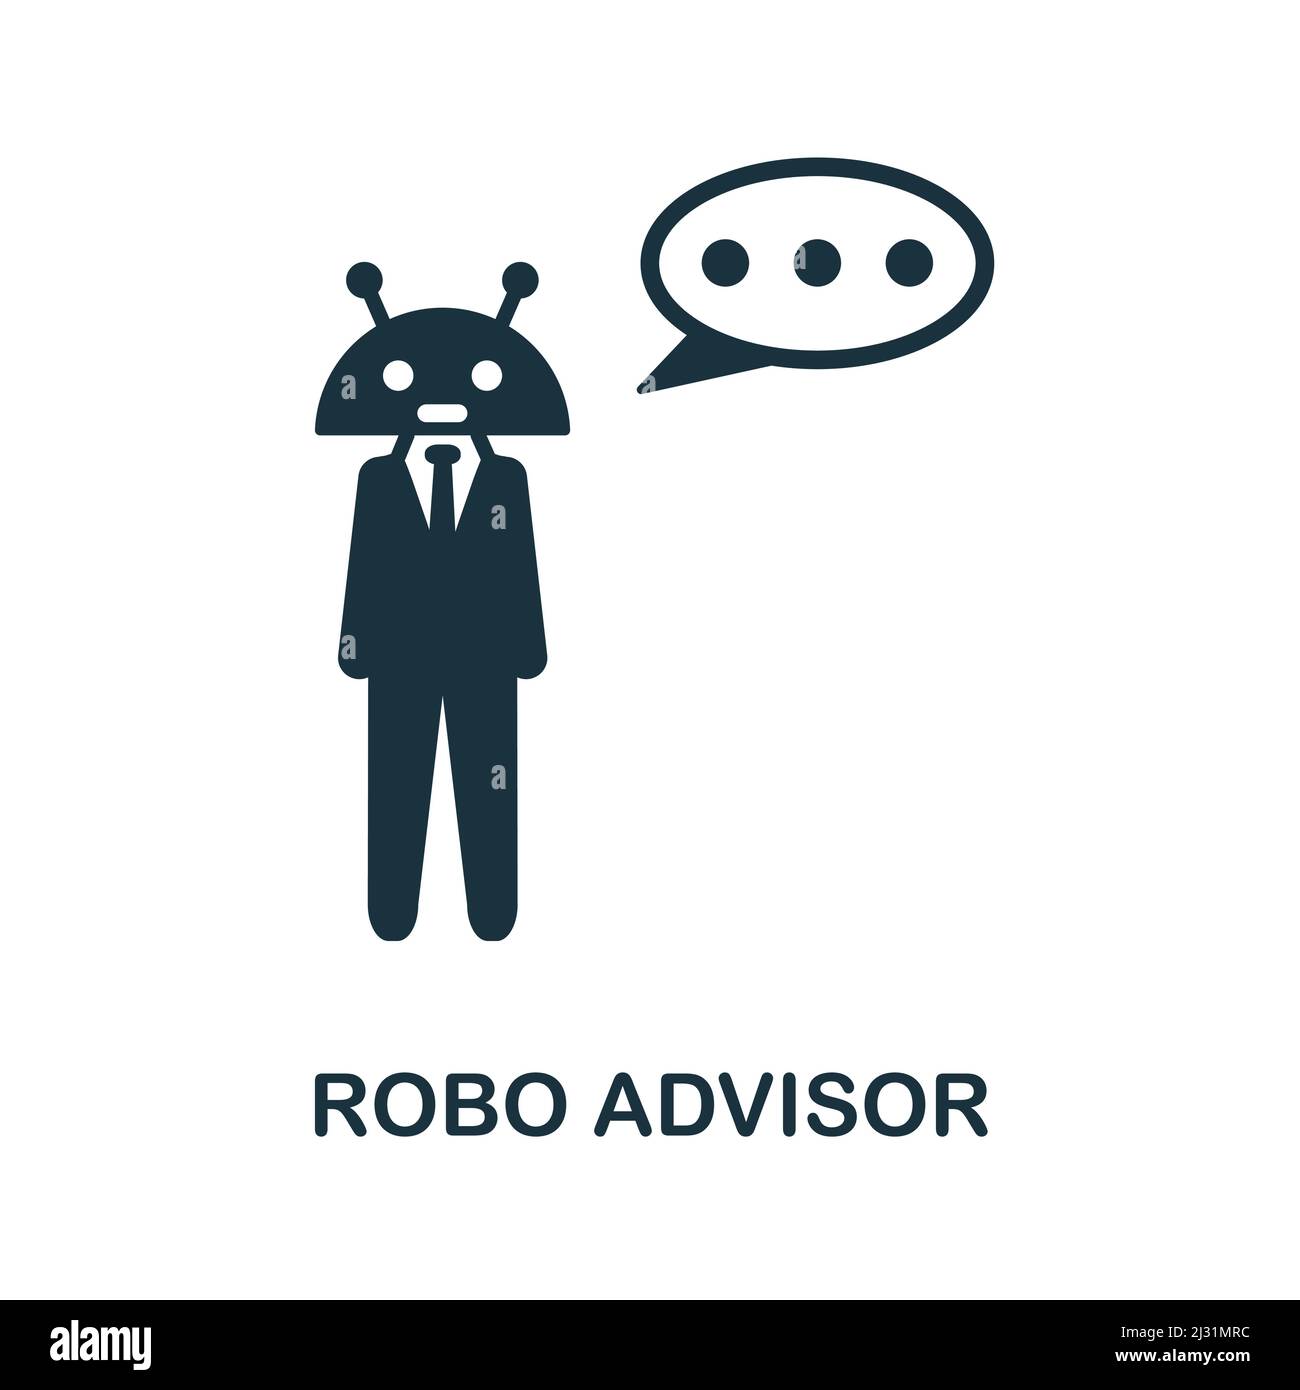 Icône de conseiller ROBO. Icône Robo Advisor simple monochrome pour les modèles, la conception Web et les infographies Illustration de Vecteur